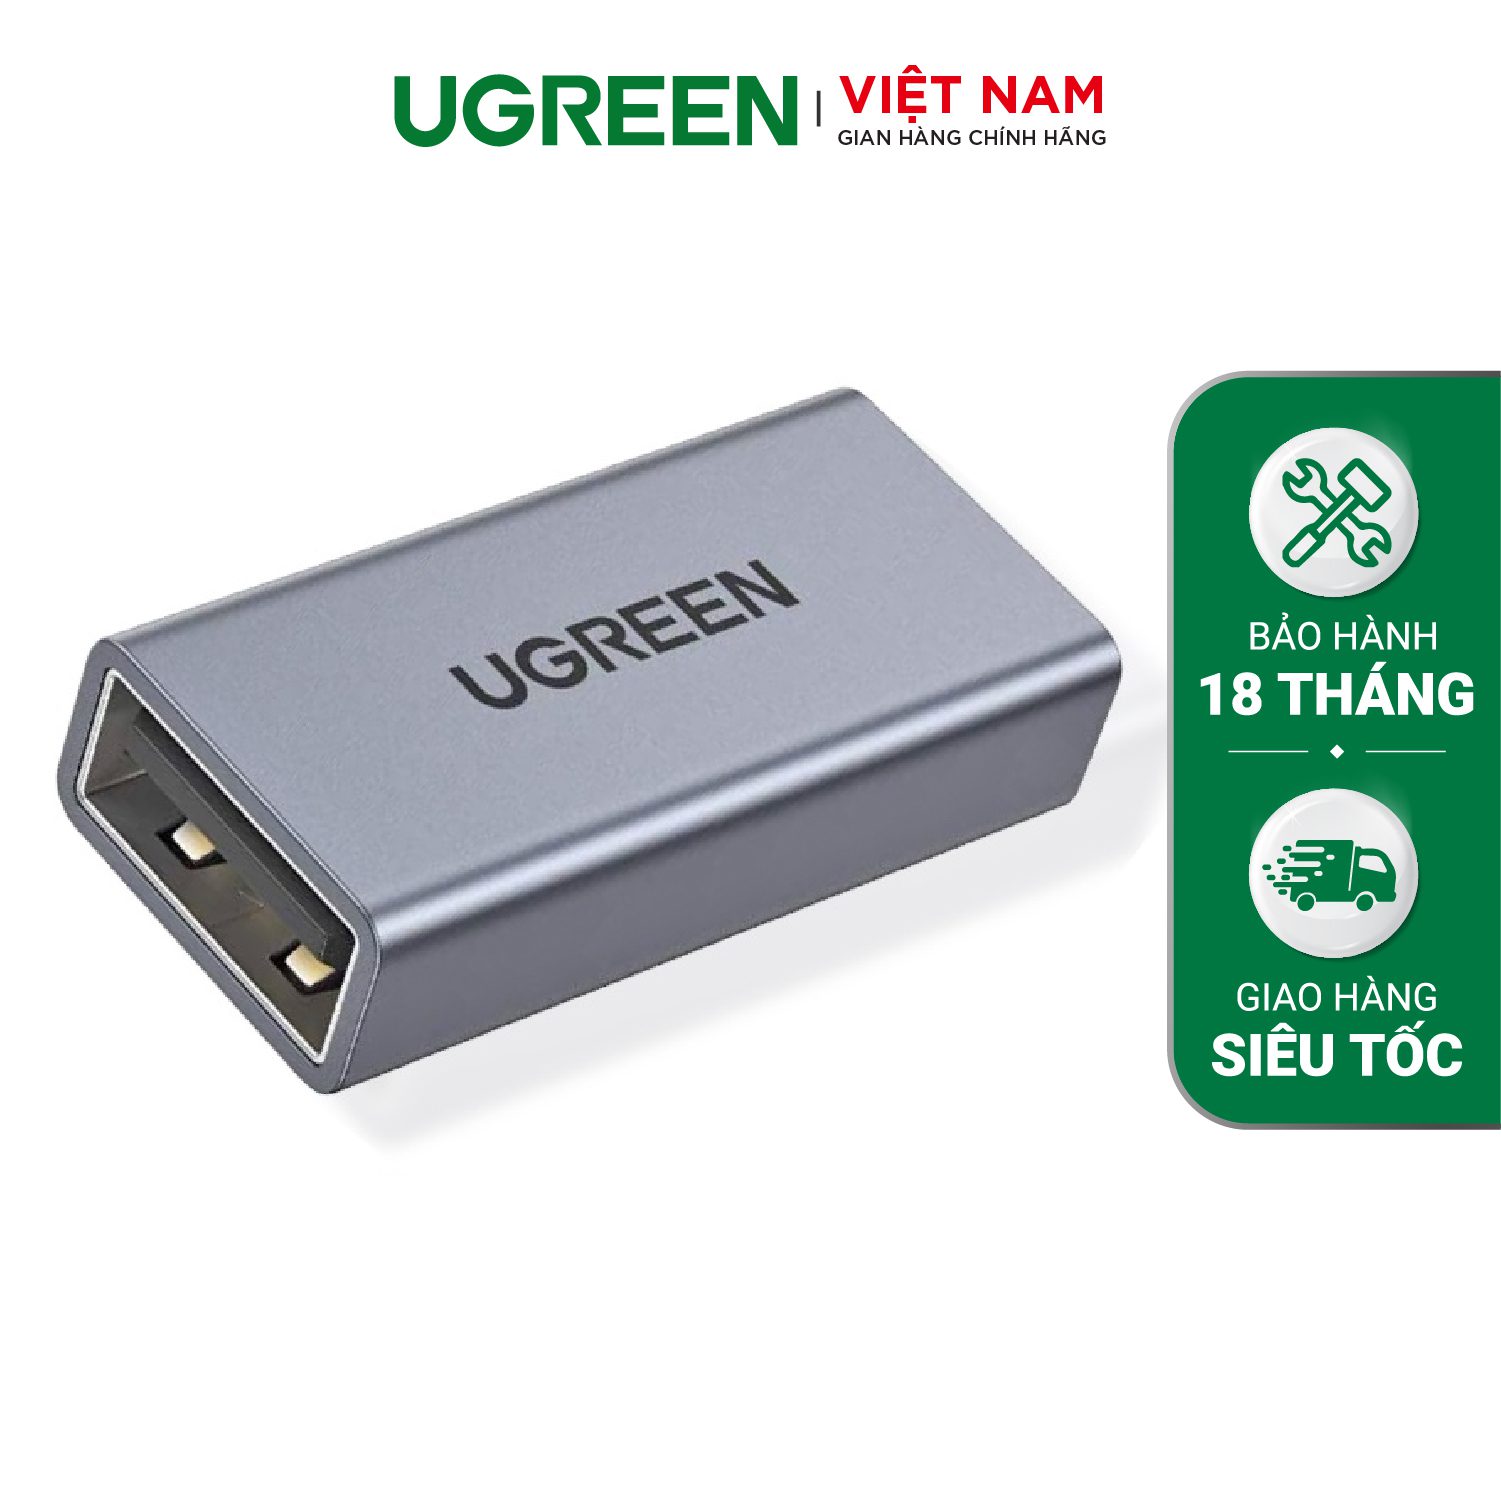 Đầu nối USB 3.0 UGREEN 20119 - Chất liệu hợp kim tản nhiệt tốt - Tốc độ truyền lên đến 5G - Thiết kế nhỏ gọn, dễ sử dụng – Ugreen Việt Nam